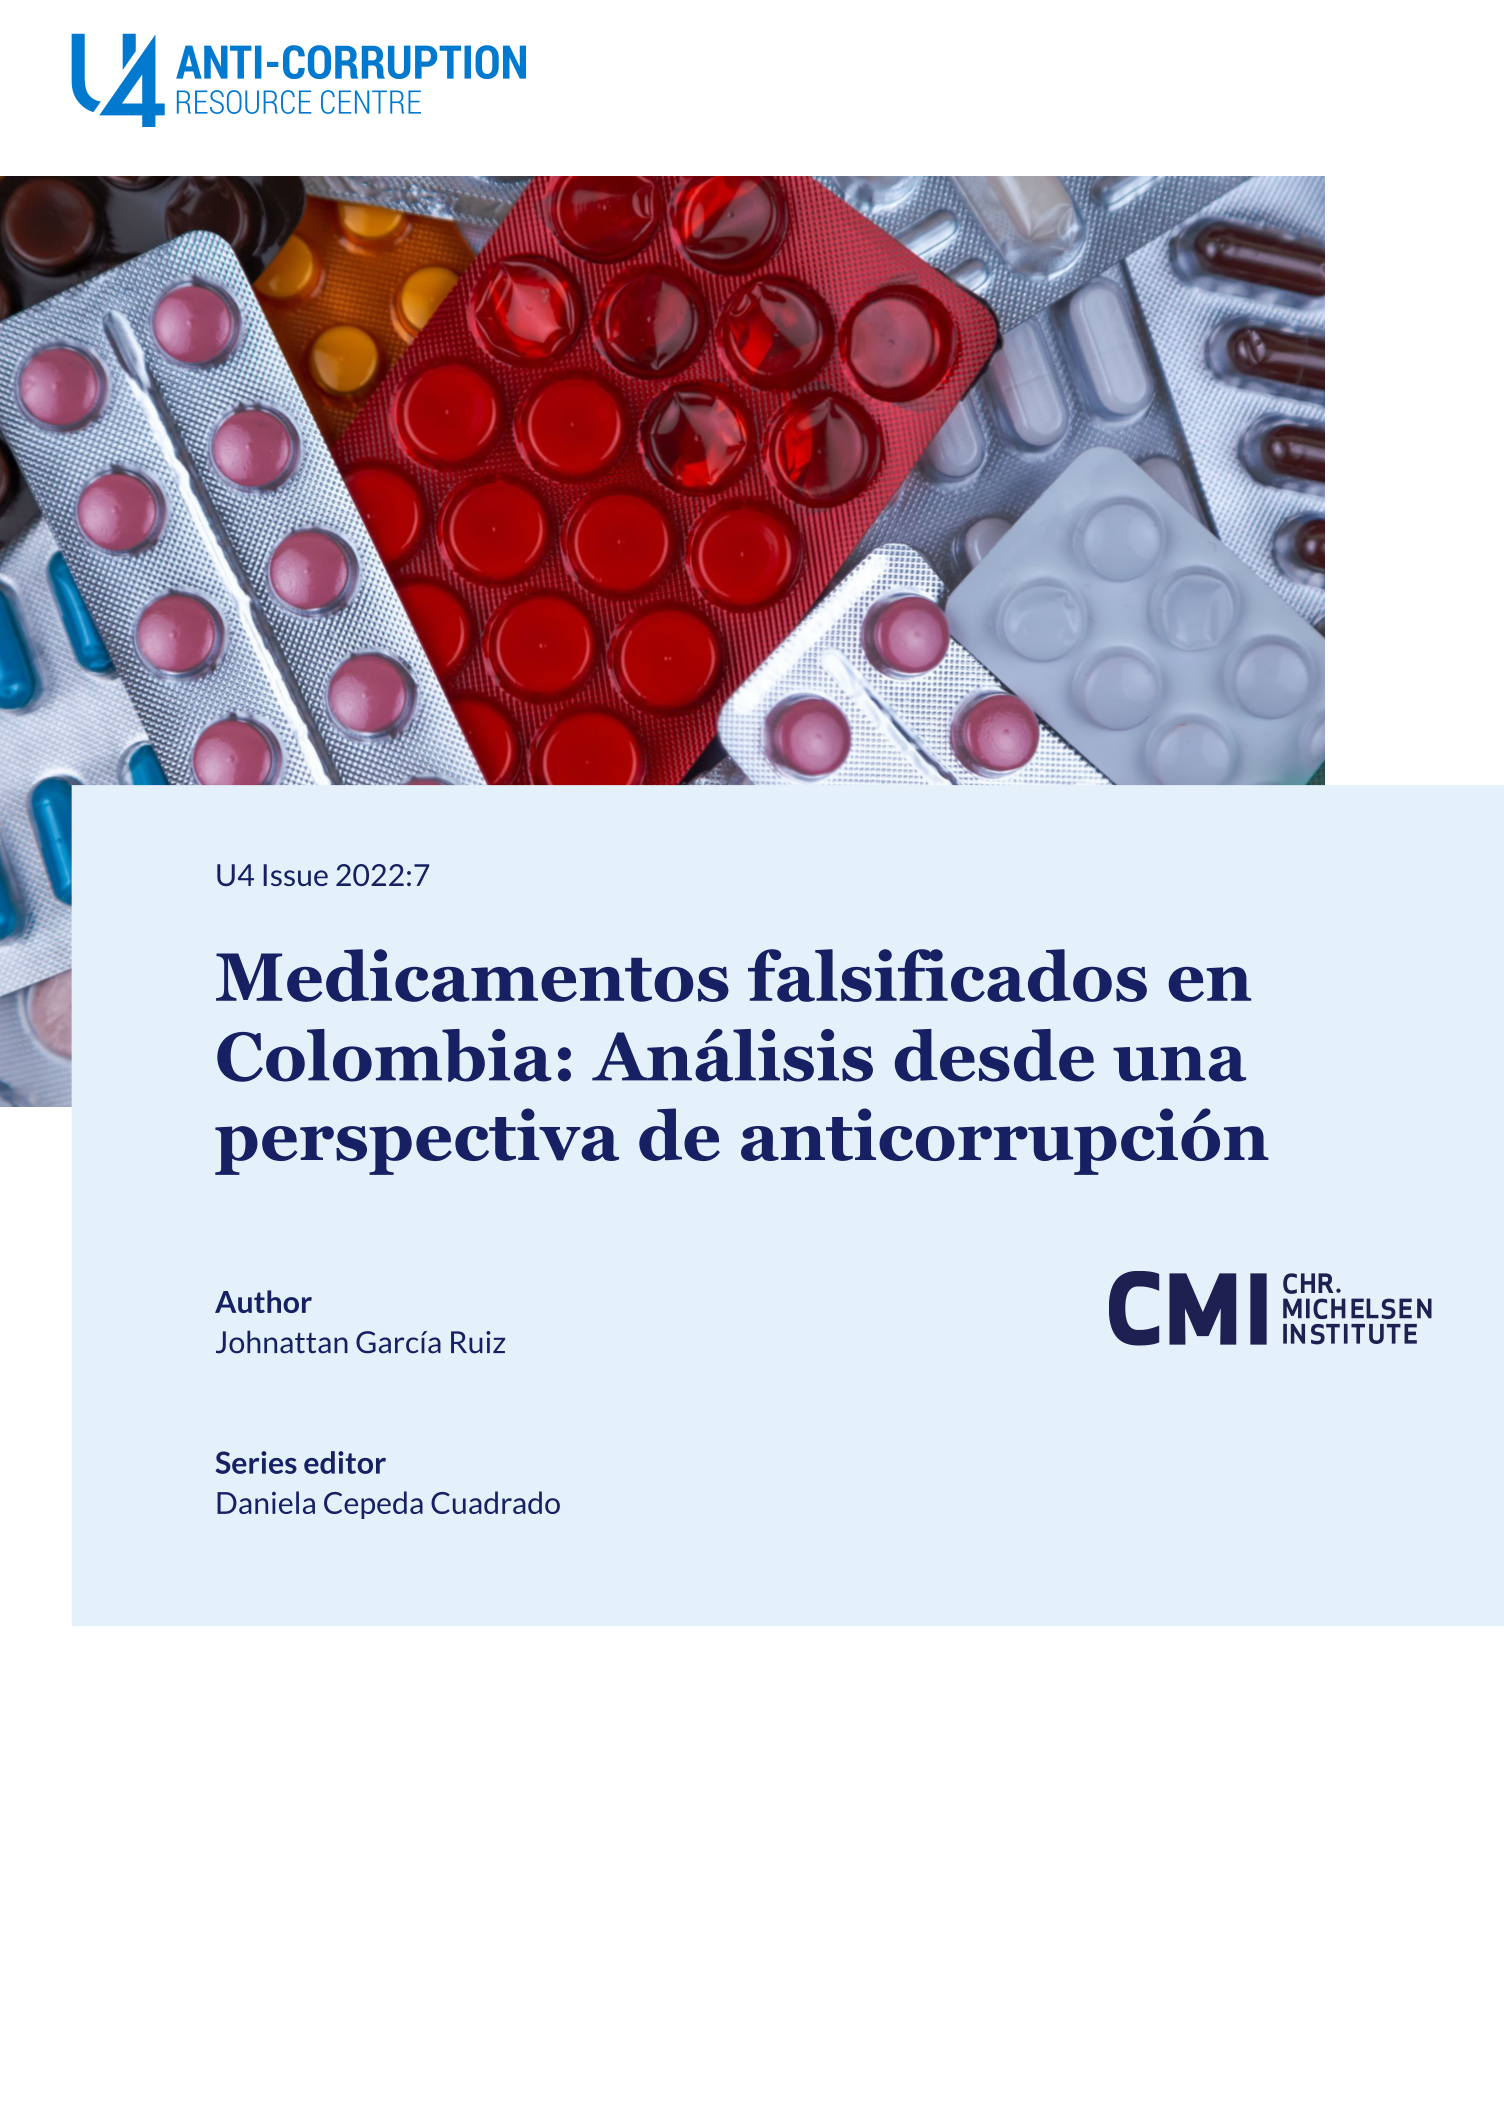 Medicamentos falsificados en Colombia: Análisis desde una perspectiva de anticorrupción